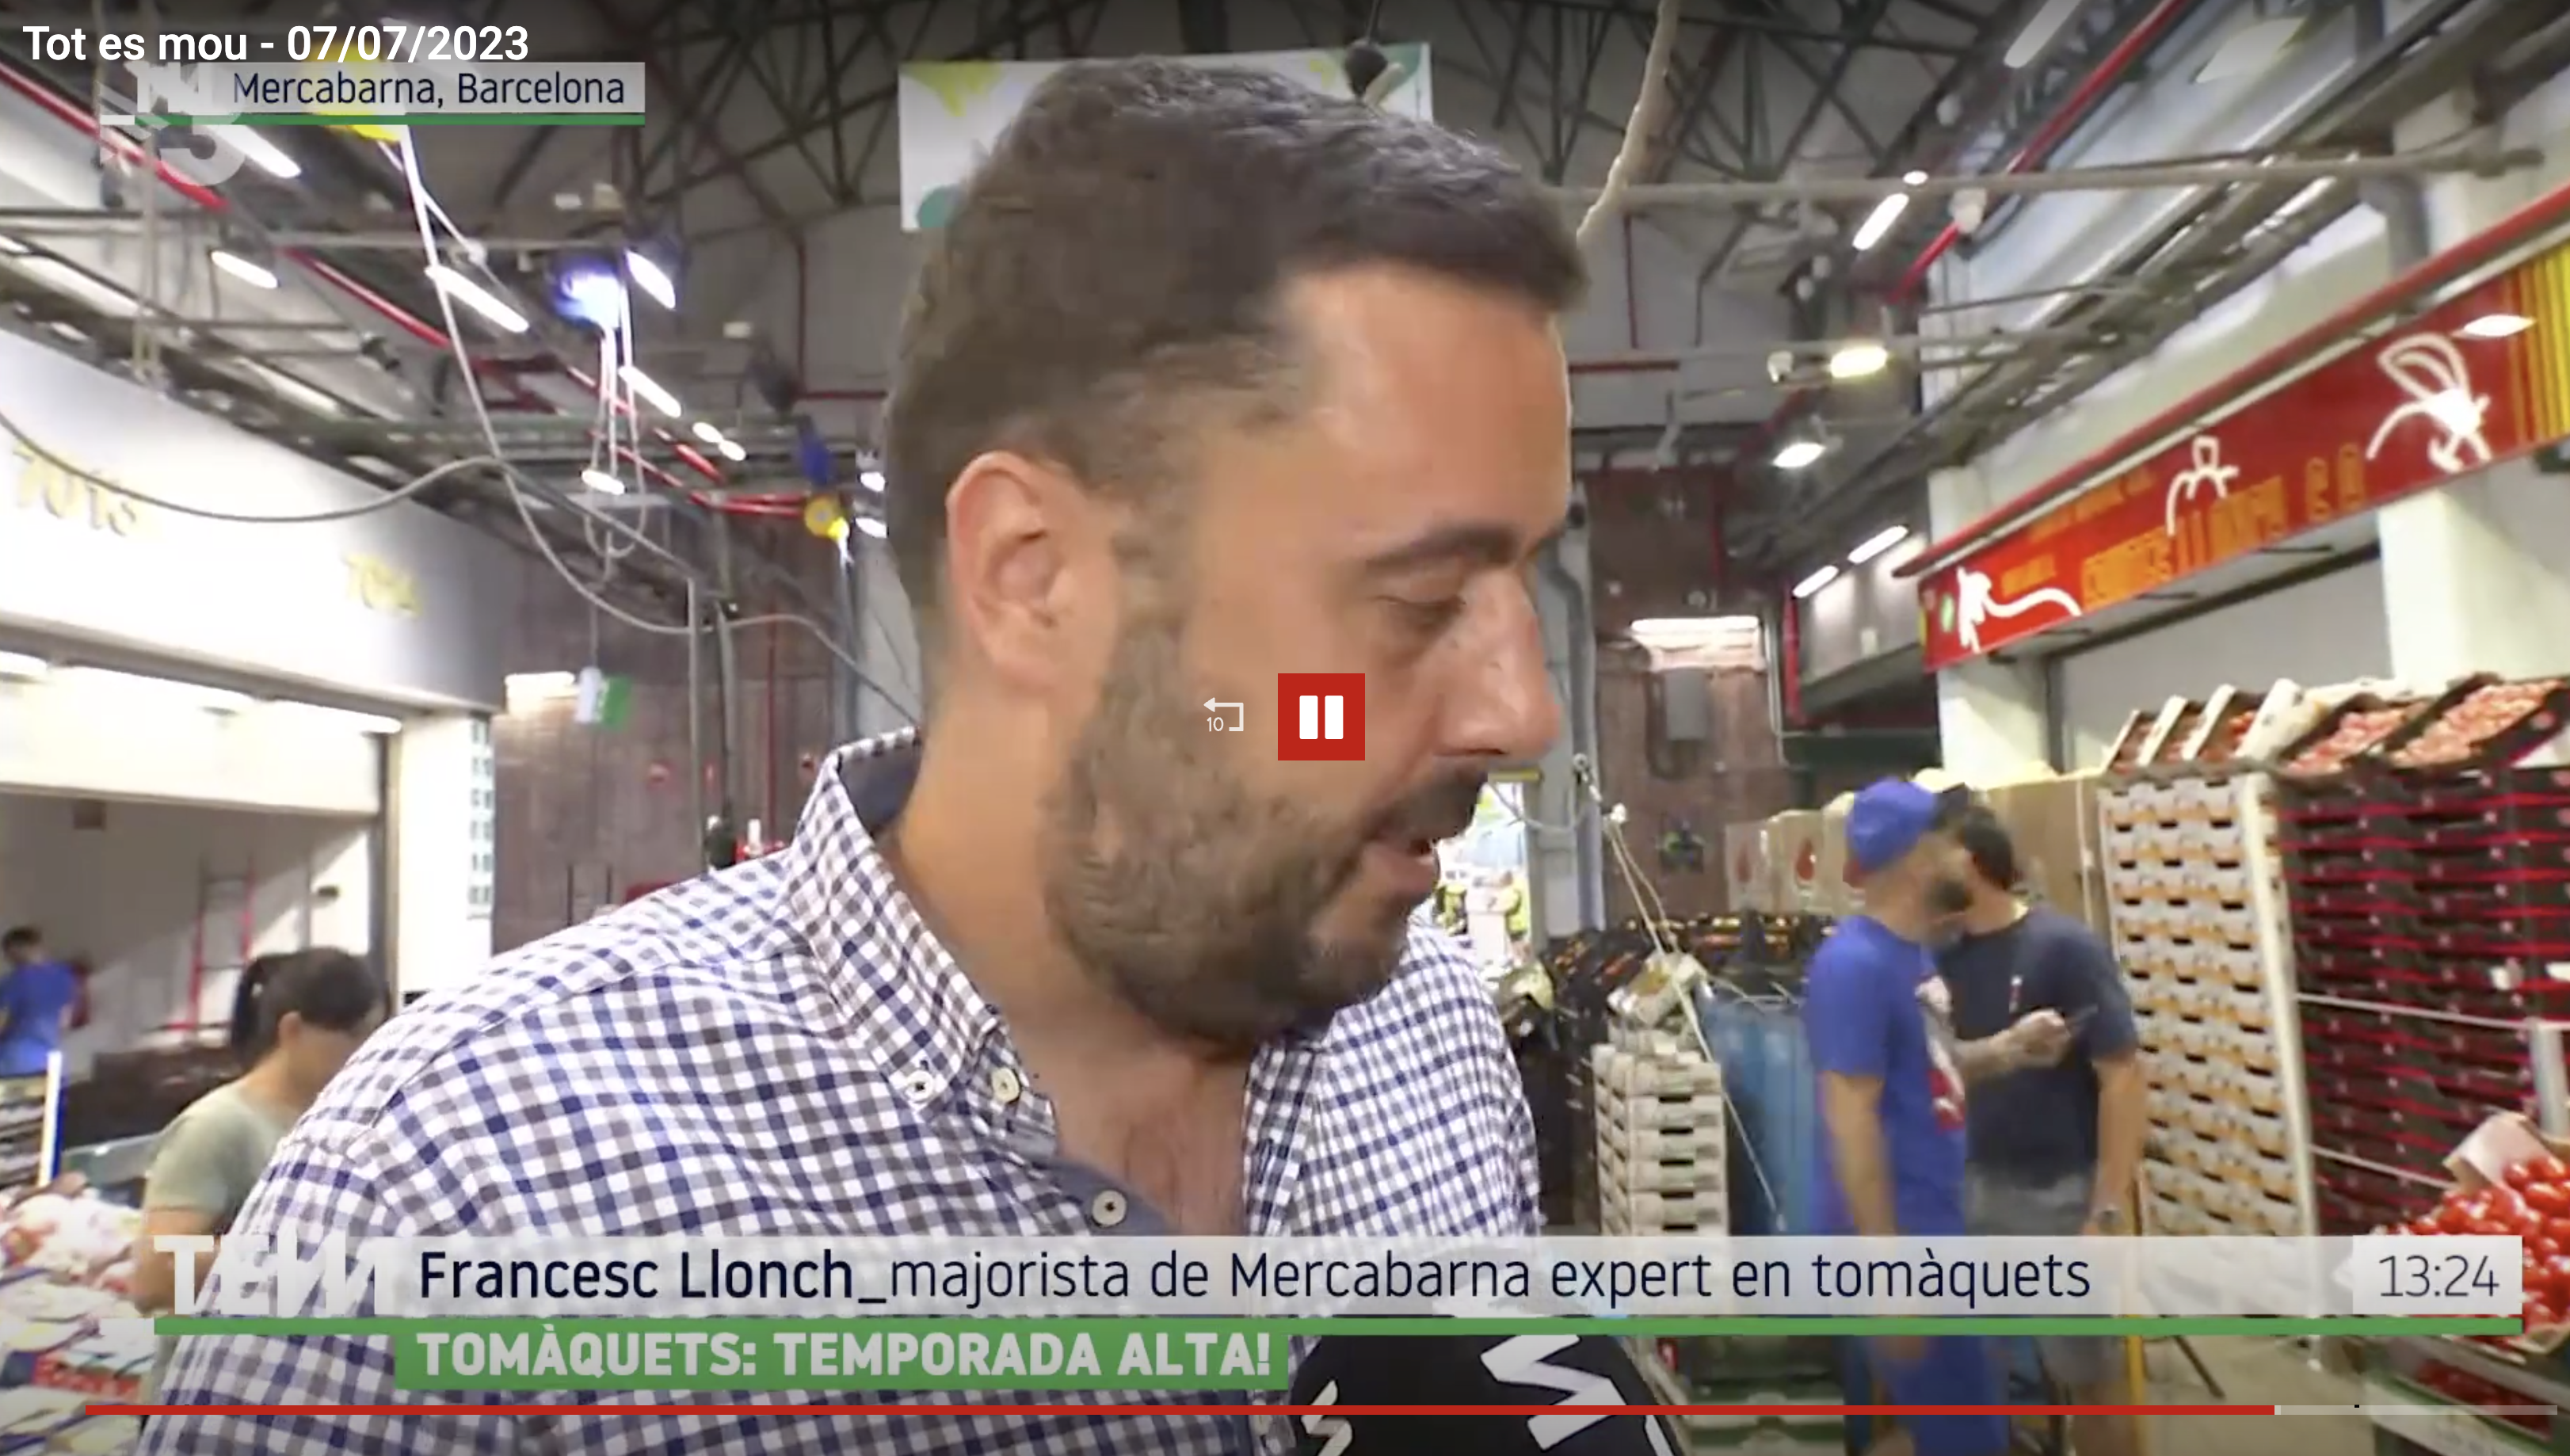 Francesc Llonch habla de tomate para Tot es mou de TV3